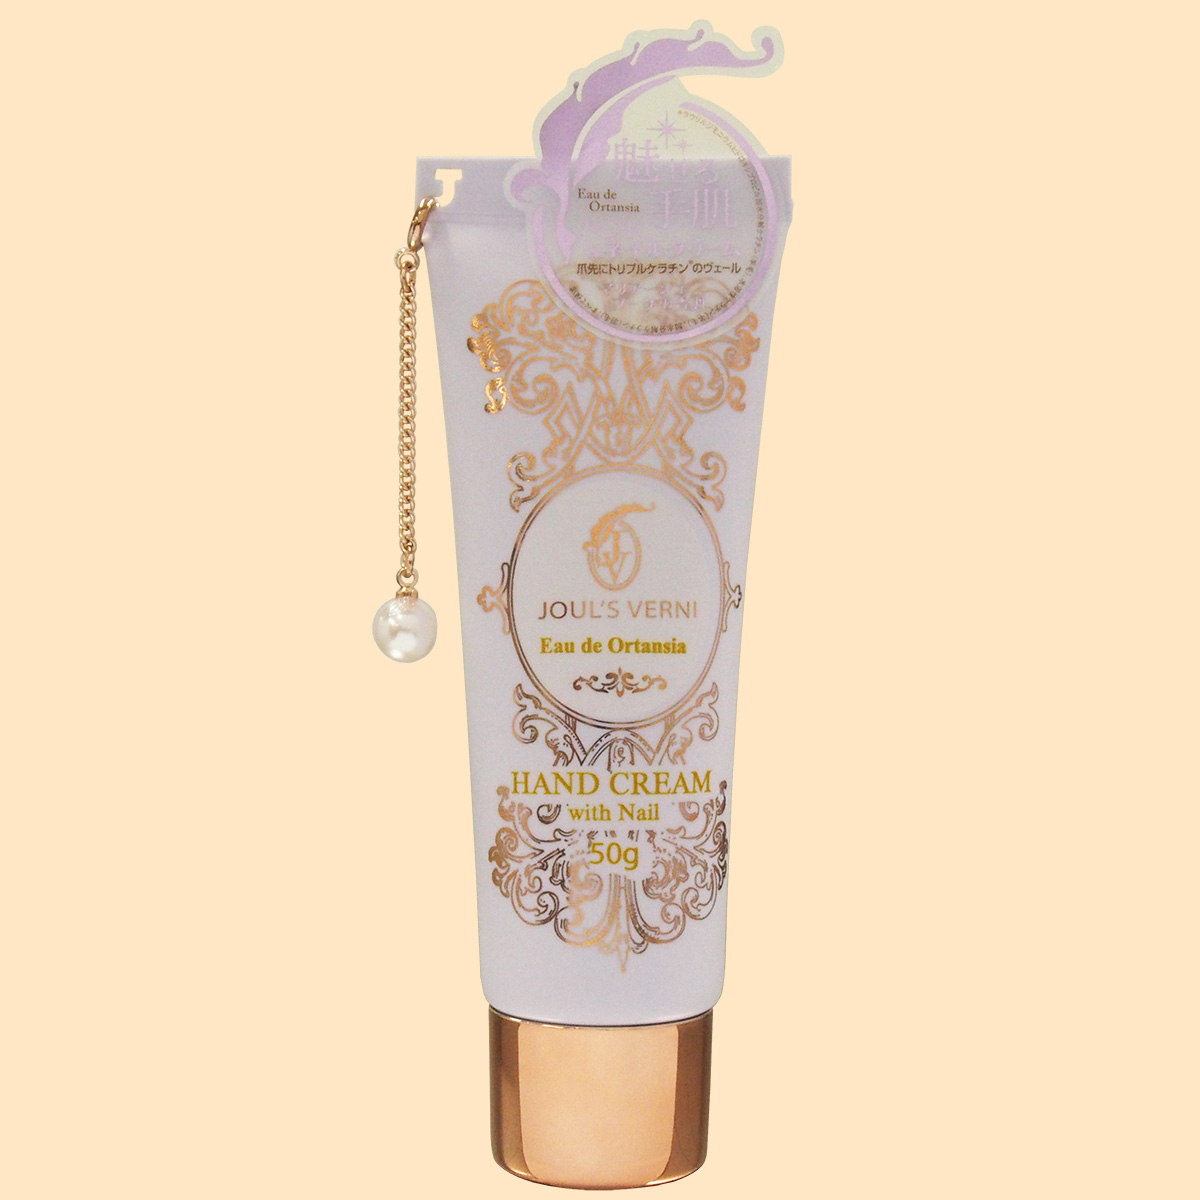 ジュール ベルニ フレグランス ハンドクリーム With ネイル オーデ オルタンシアの香り Beauty Net